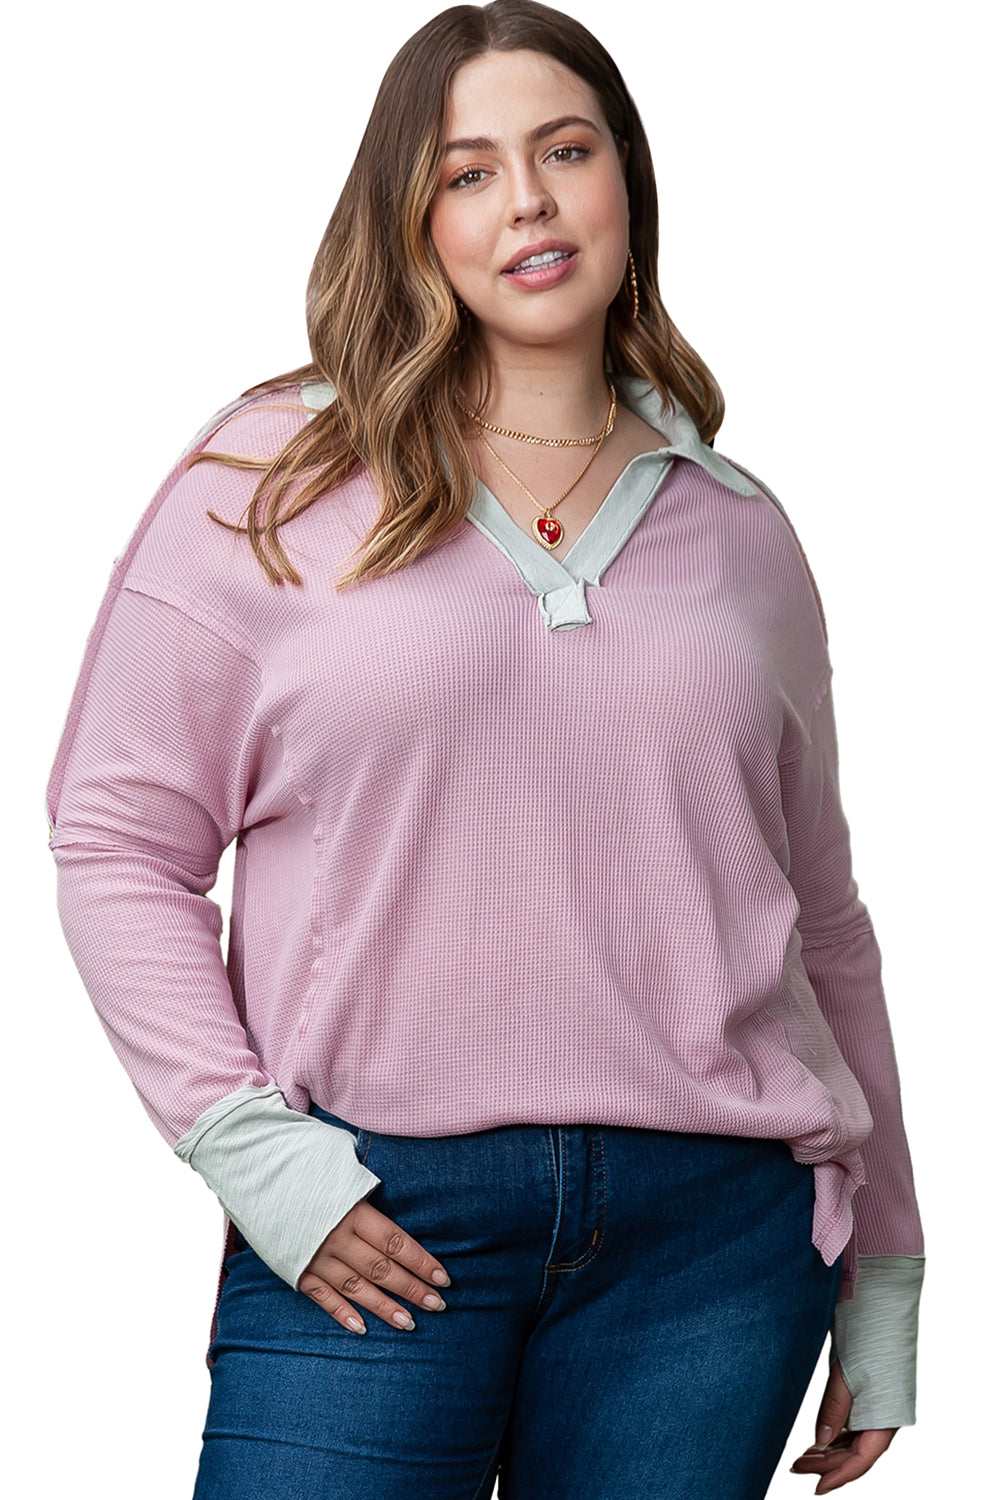 Rožnata pletena majica z izpostavljenimi šivi in ​​velikimi vaflji